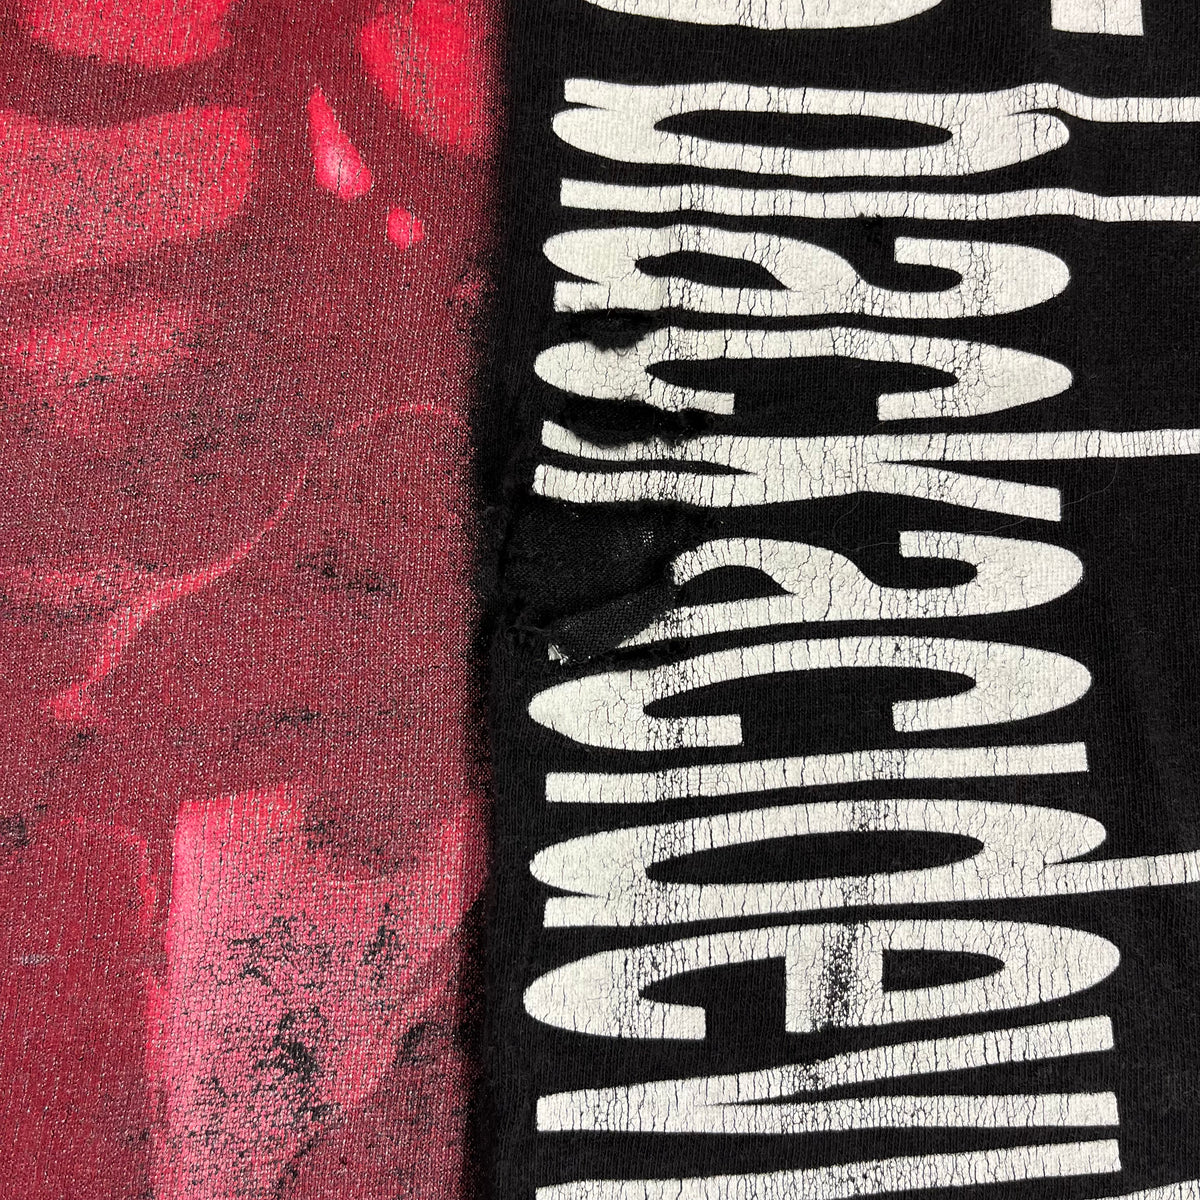 Vintage Danzig 5 &quot;Blackacidevil&quot; T-Shirt